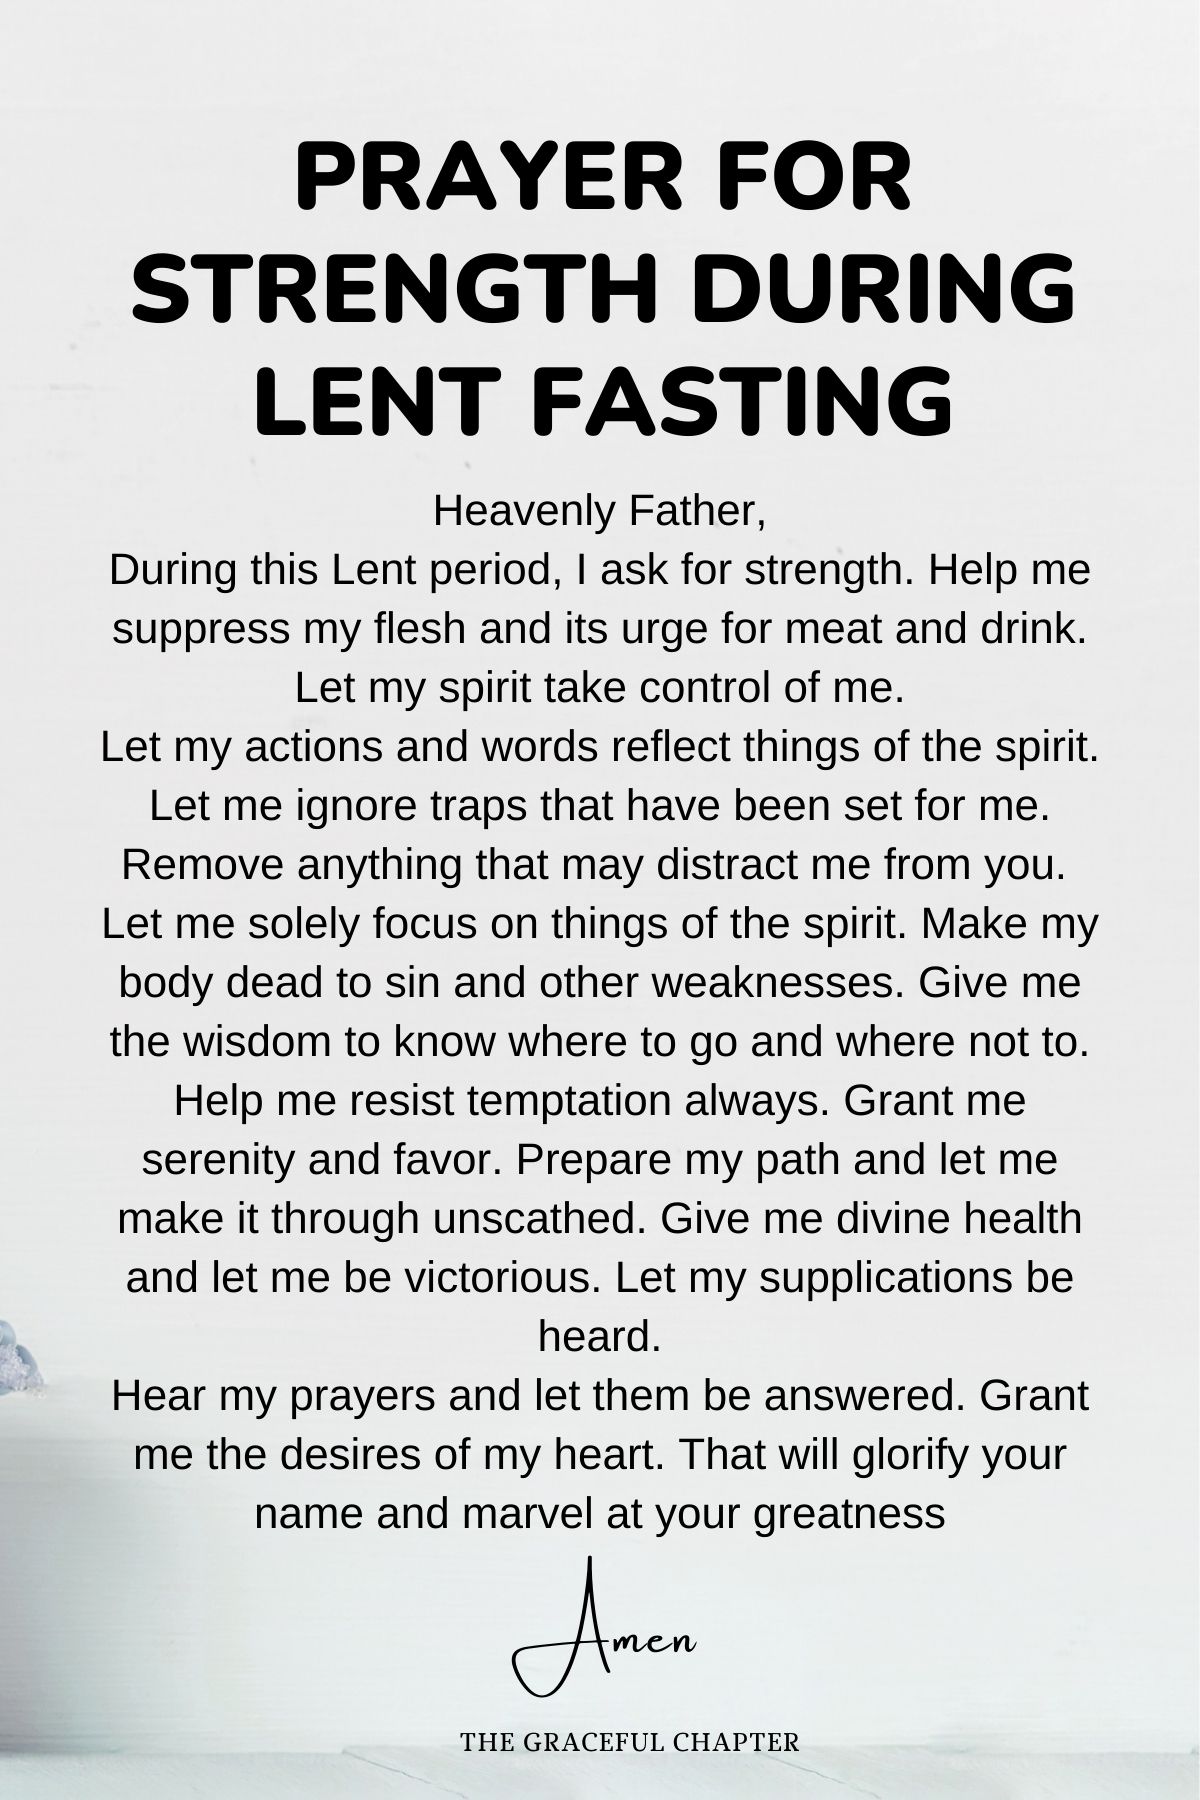 Prayer for strength during lent fasting